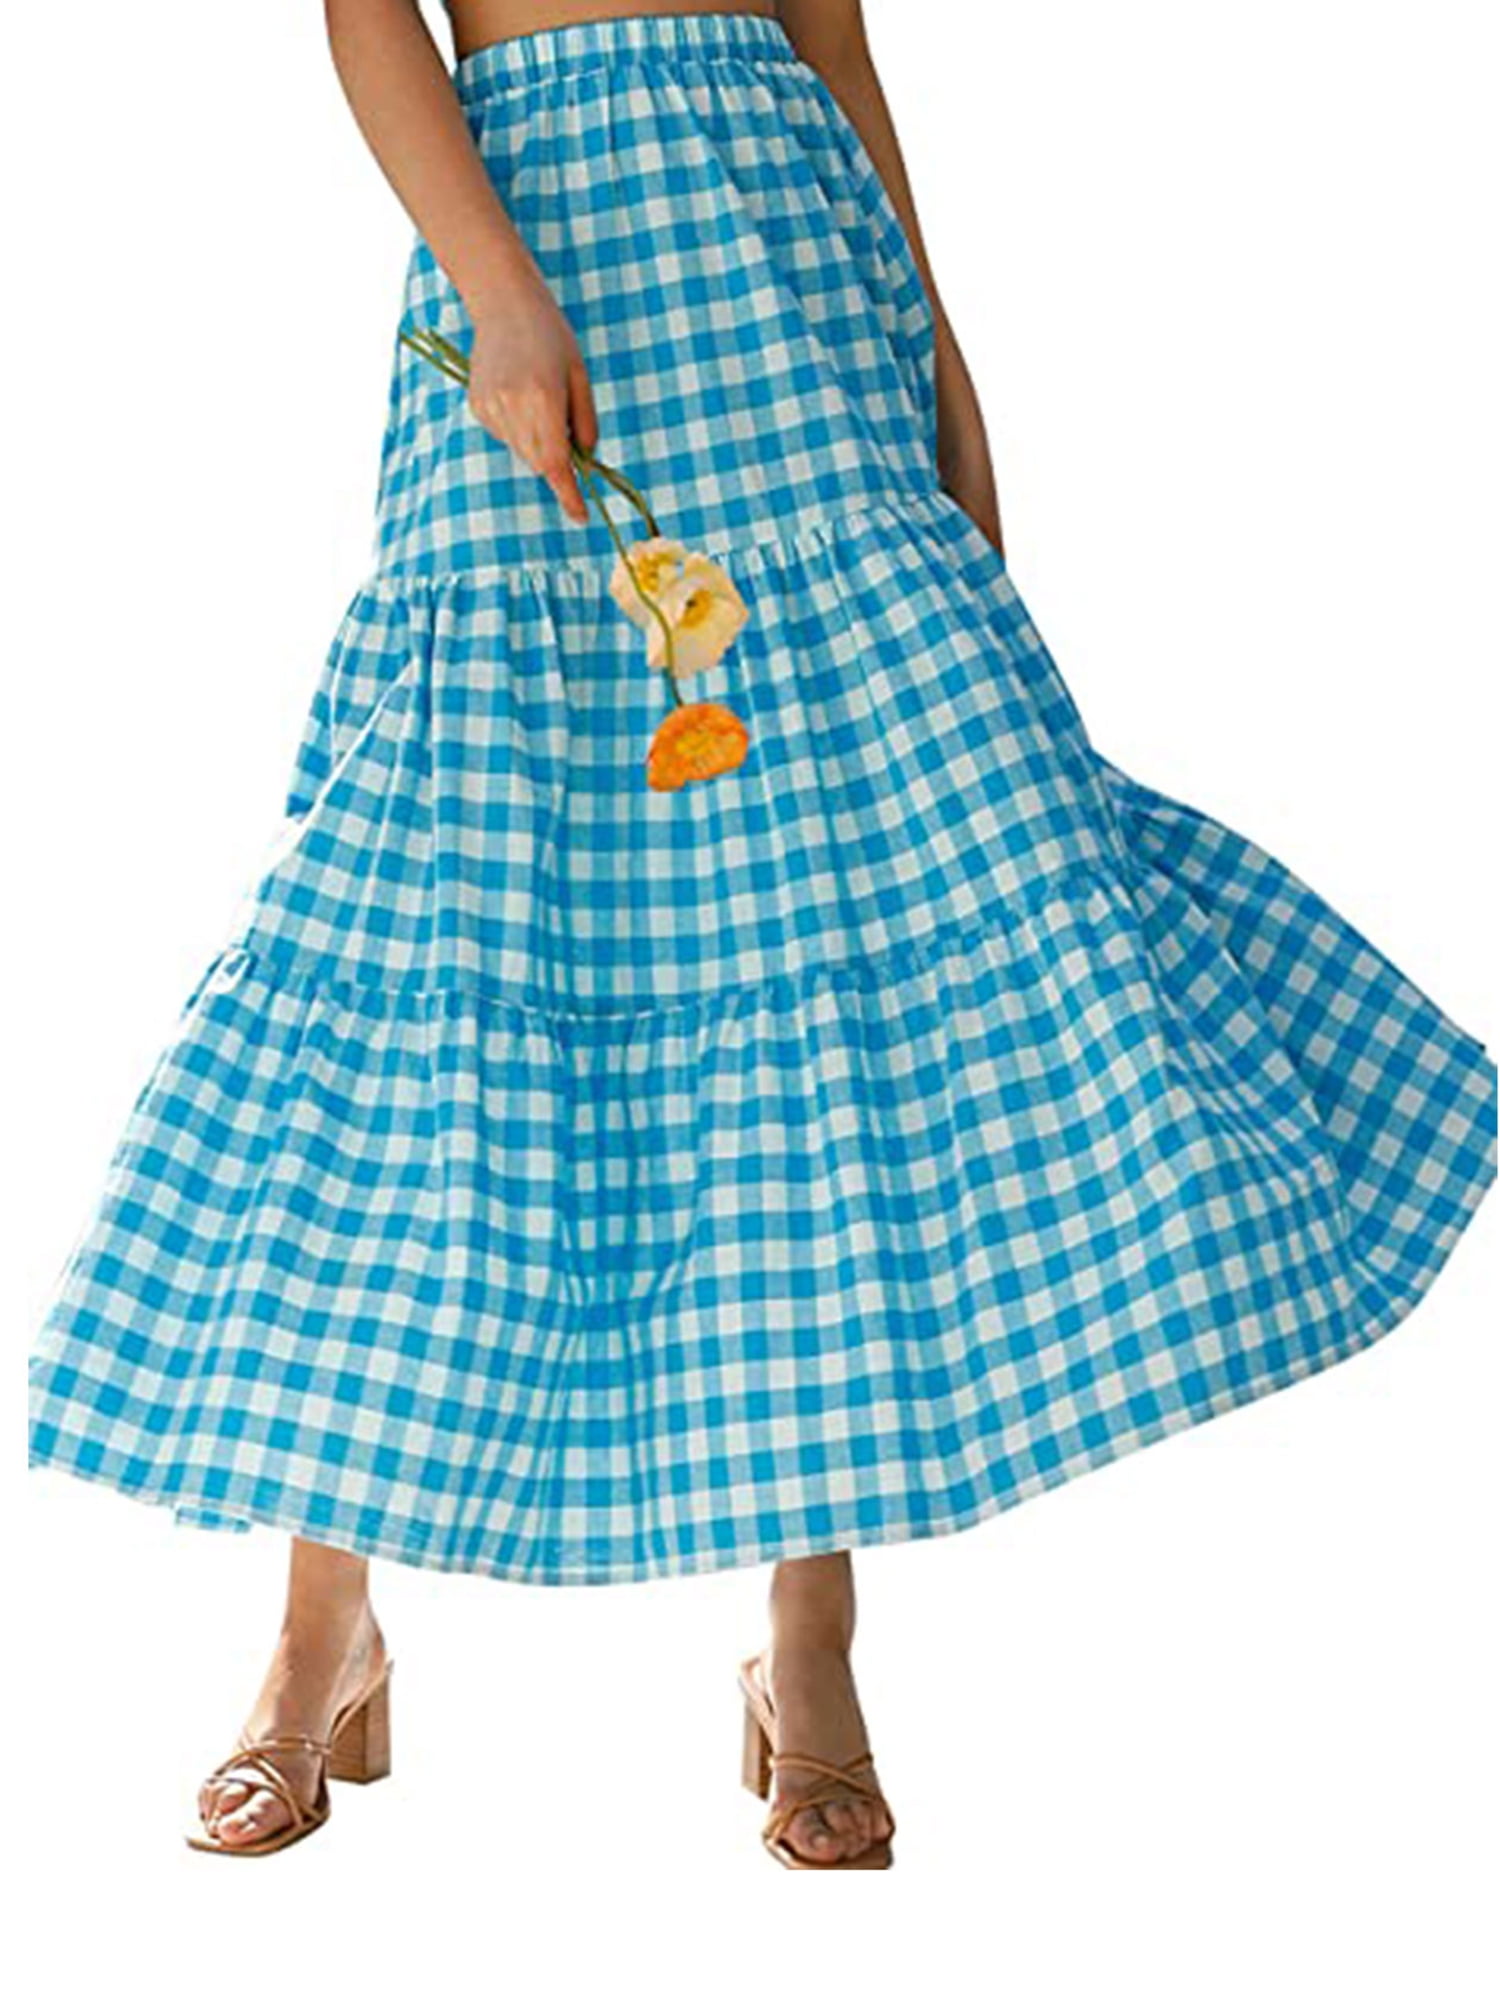 Women Tiered Skirt Ruffle Maxi Skirt High Waist Elegant Bohemian Skirt  Vintage Beach Long Hippie Skirt for Girls Black, Small - Walmart.com